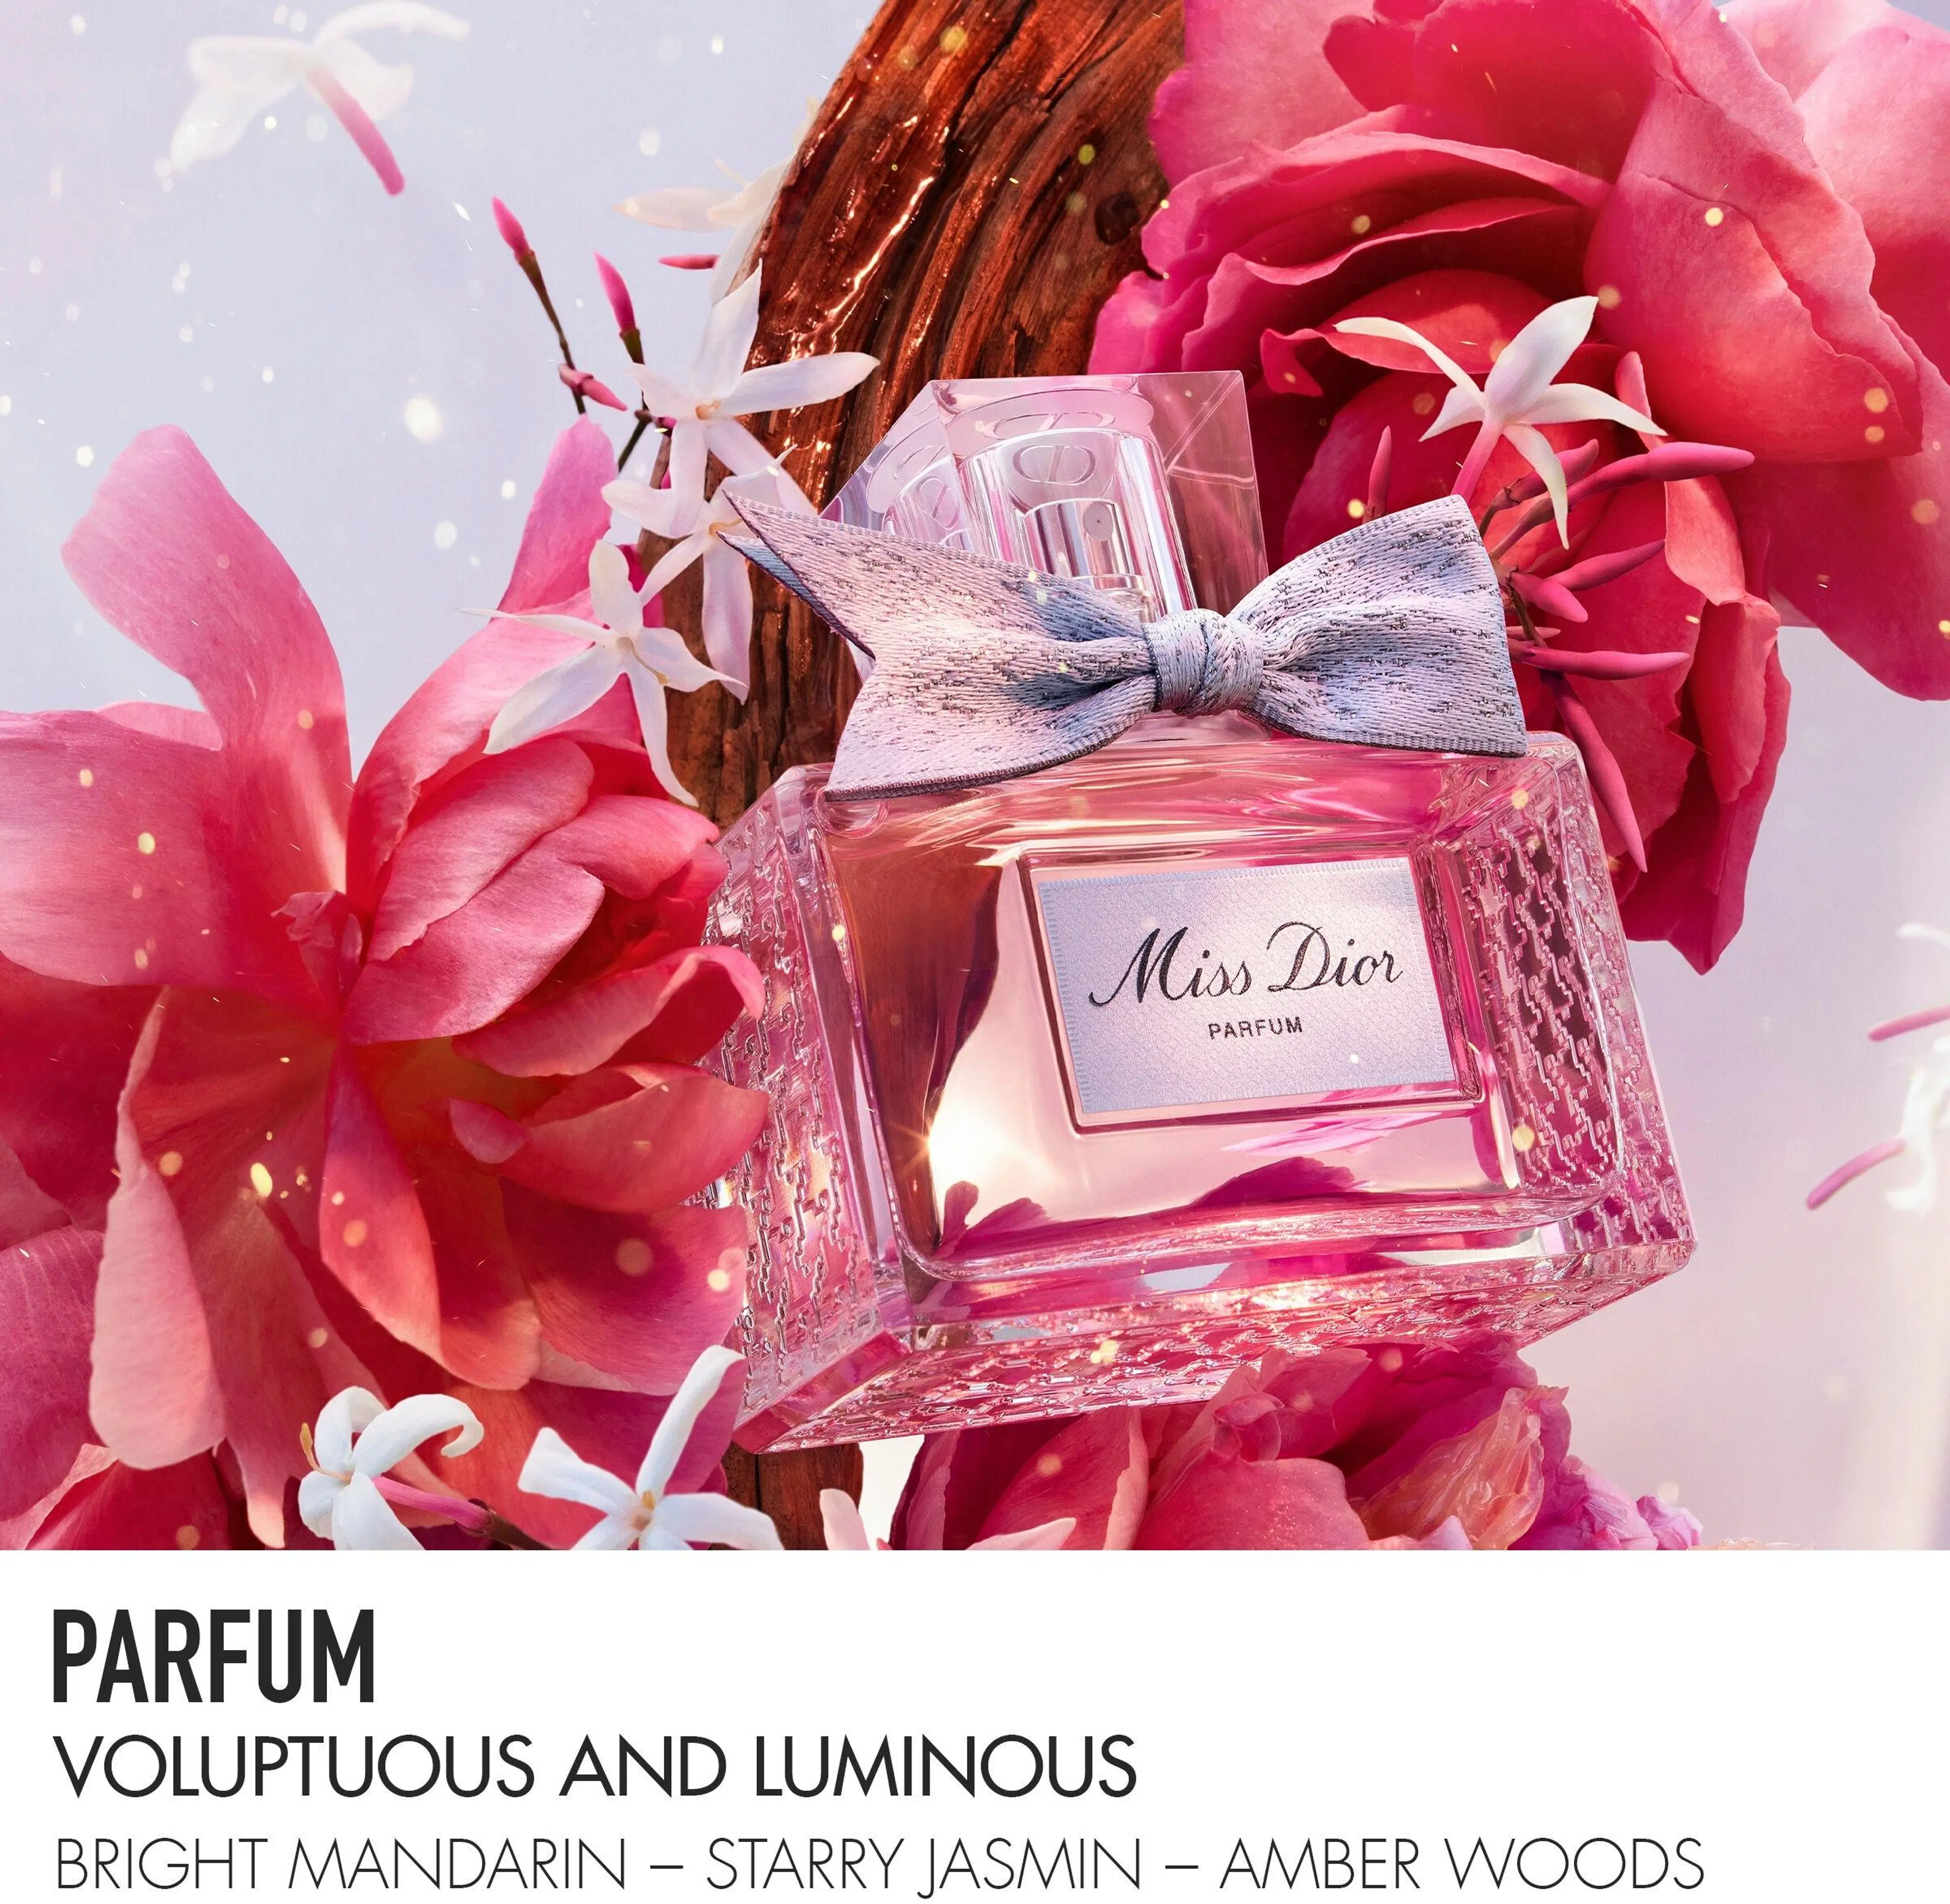 DIOR Miss Dior Parfum tuoksu 50 ml